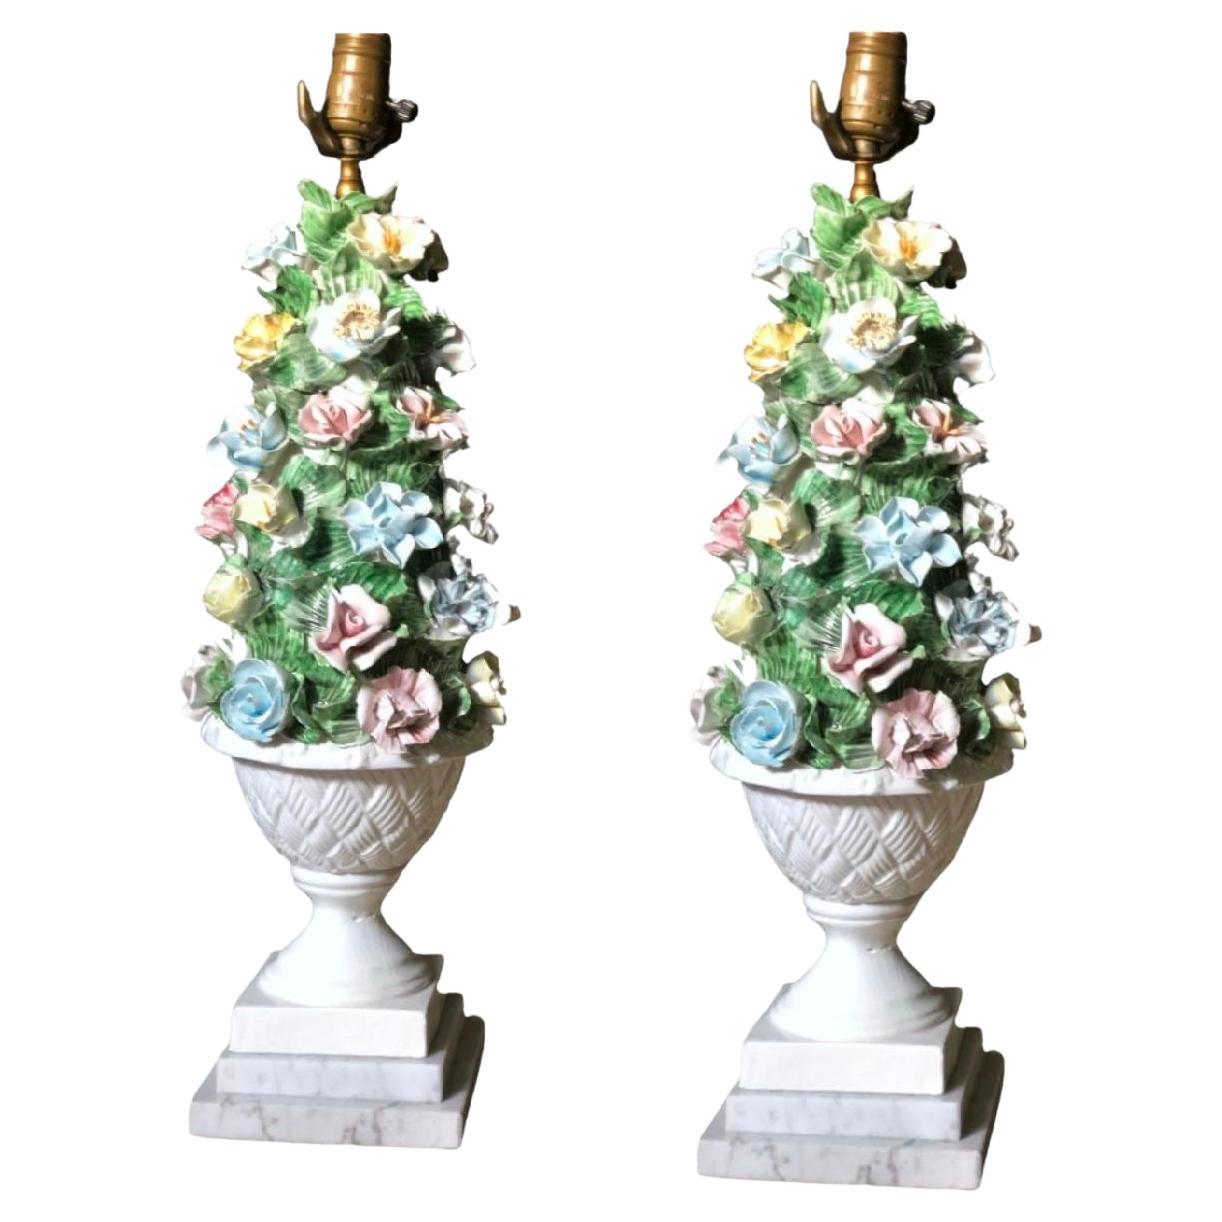 Italienische moderne Capodimonte-Porzellan-Topiary-Blumen-Tischlampen aus der Mitte des Jahrhunderts. Wunderschöne handgefertigte Lampen aus neapolitanischem Porzellan aus der Mitte des letzten Jahrhunderts, die sich durch ihre Farbenpracht und ihre